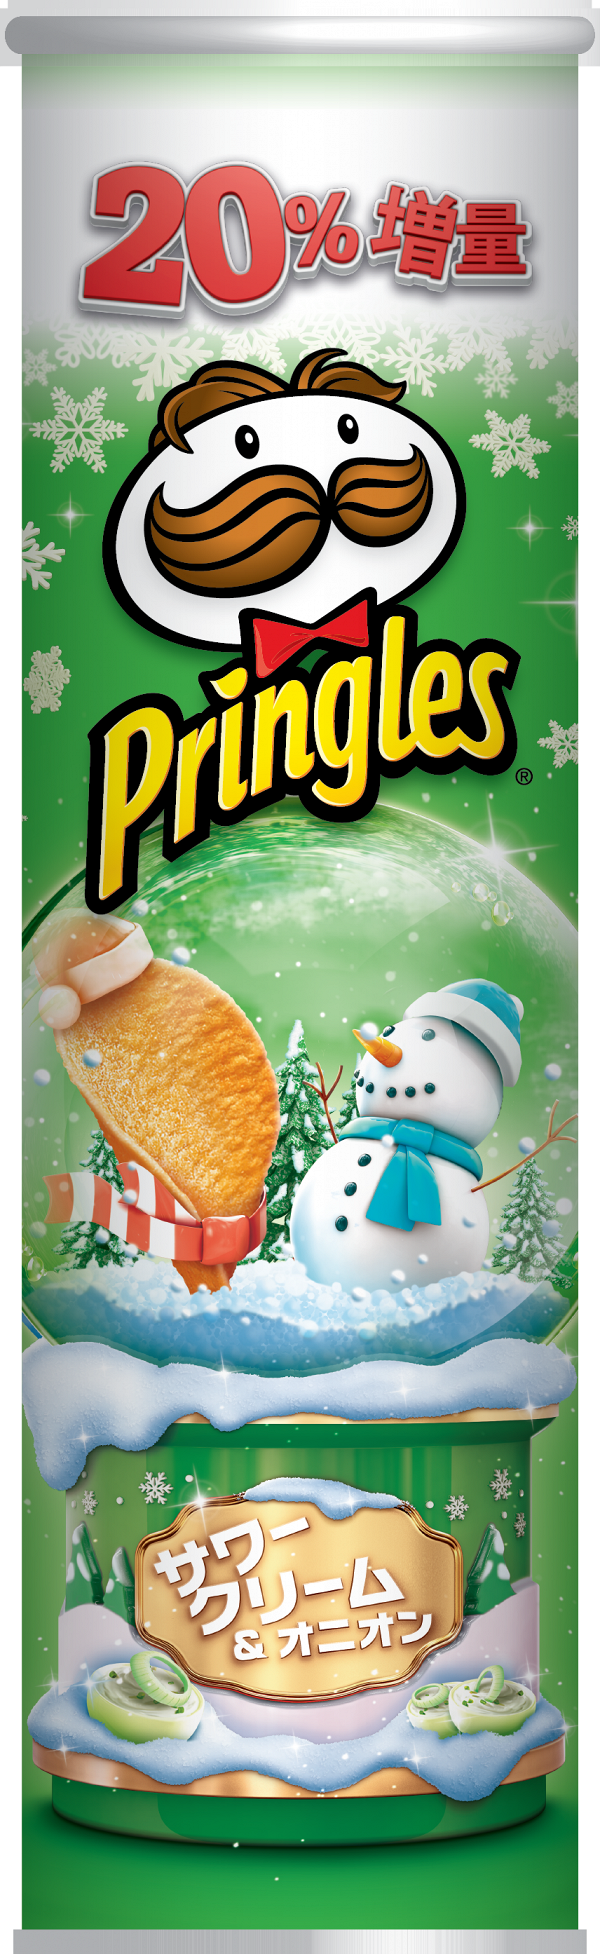 Pringles品客推聖誕期間限定煙燻芝士味薯片